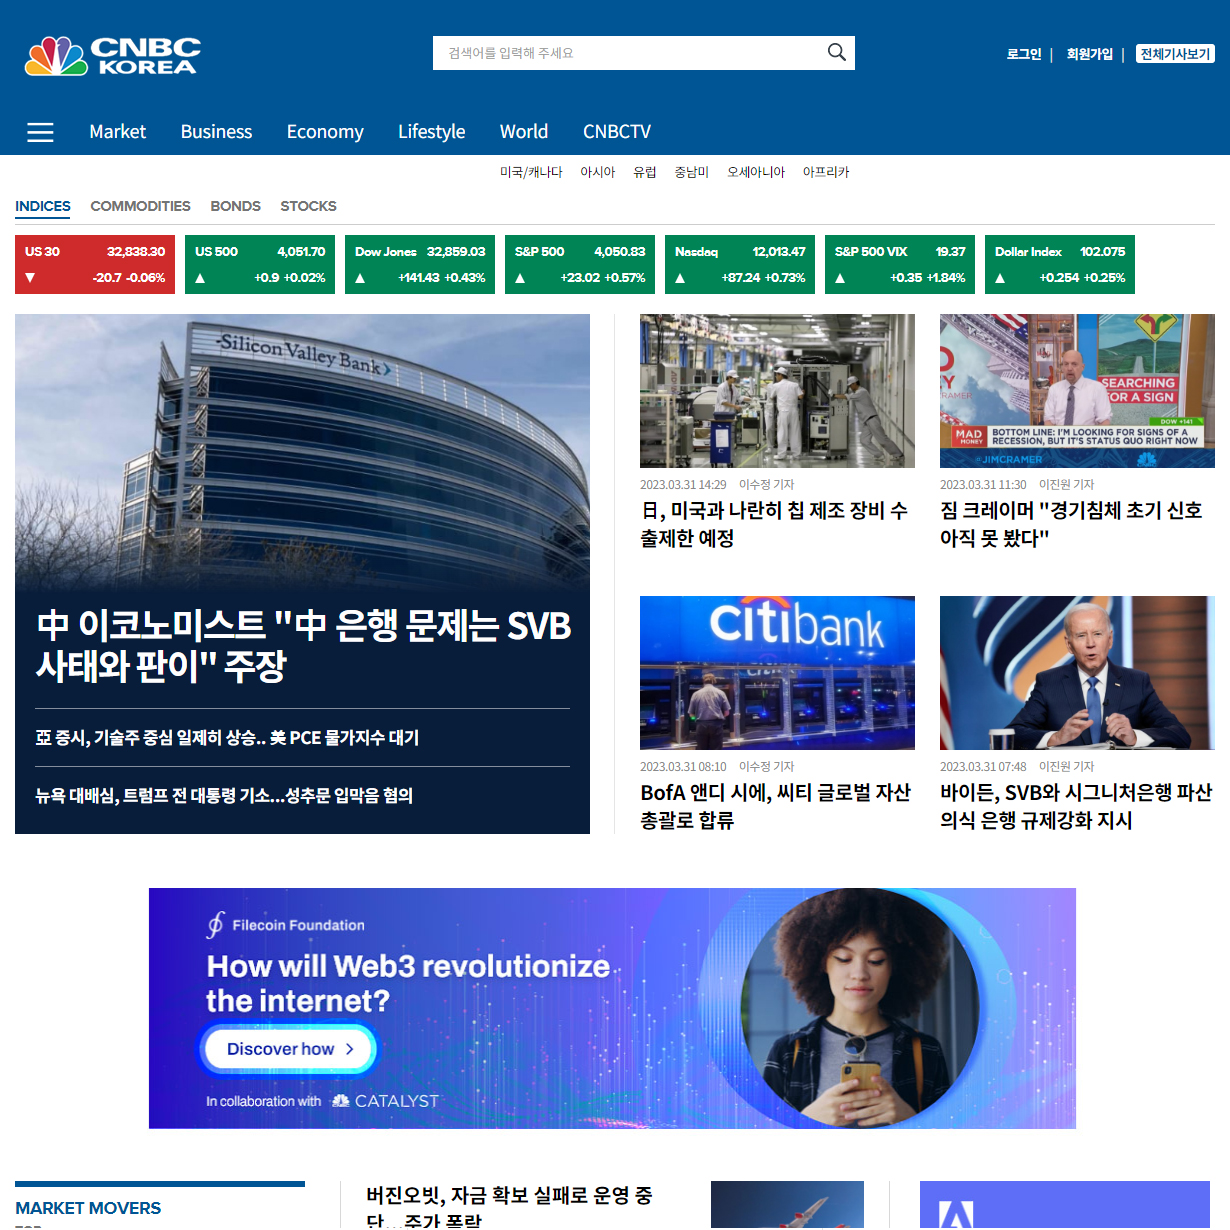 CNBC KOREA